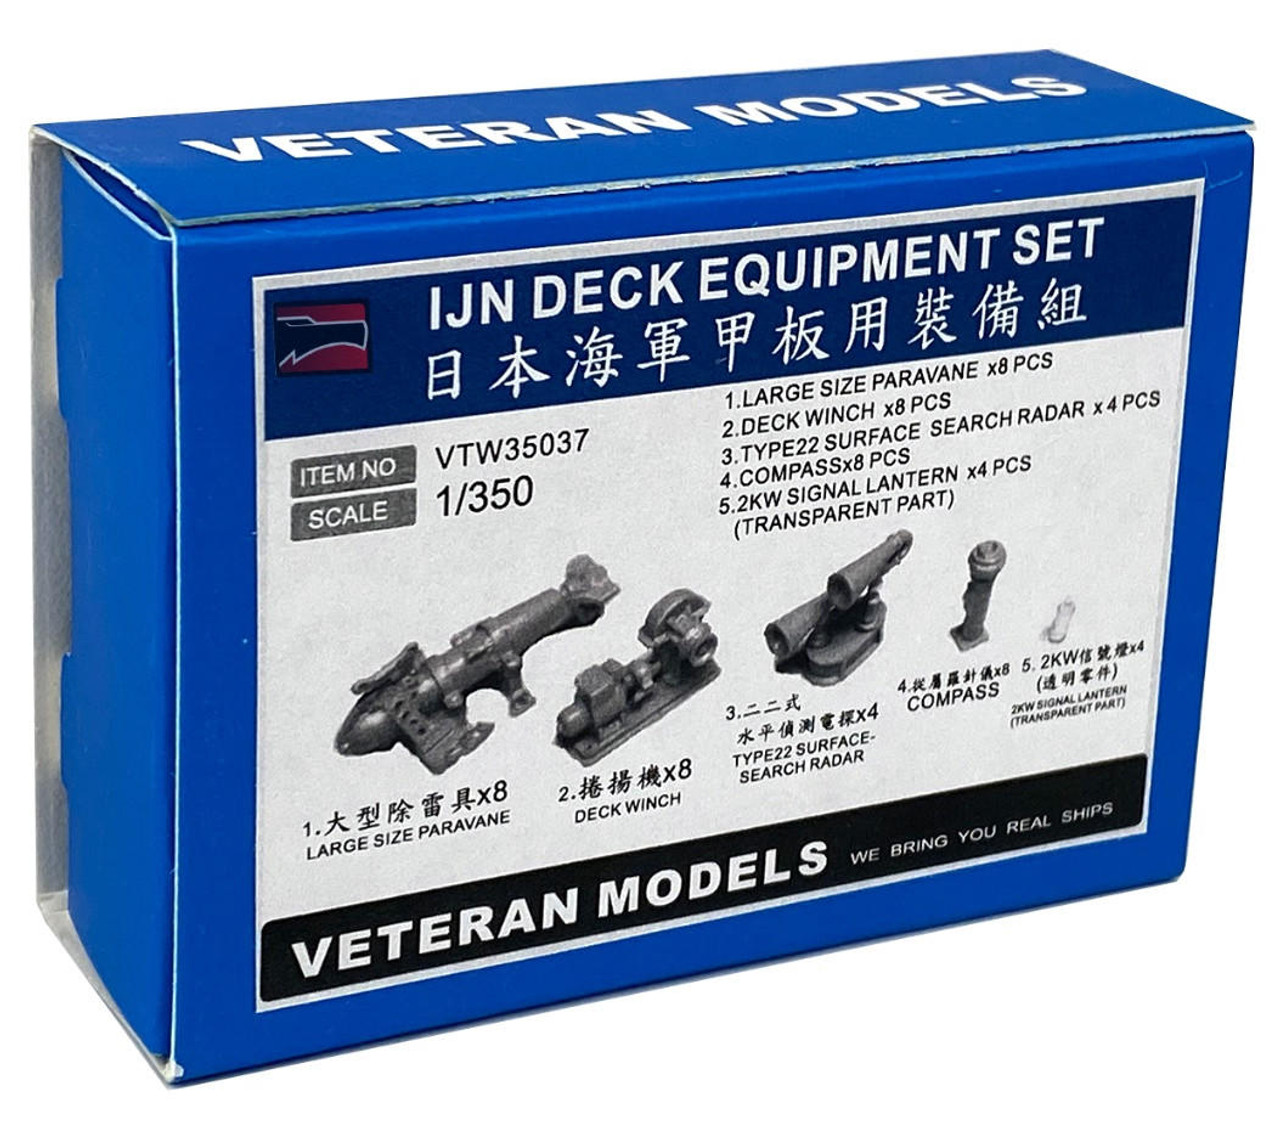 VTW35037 1/350 Veteran Models IJN Deck Equipment Set MMD Squadron